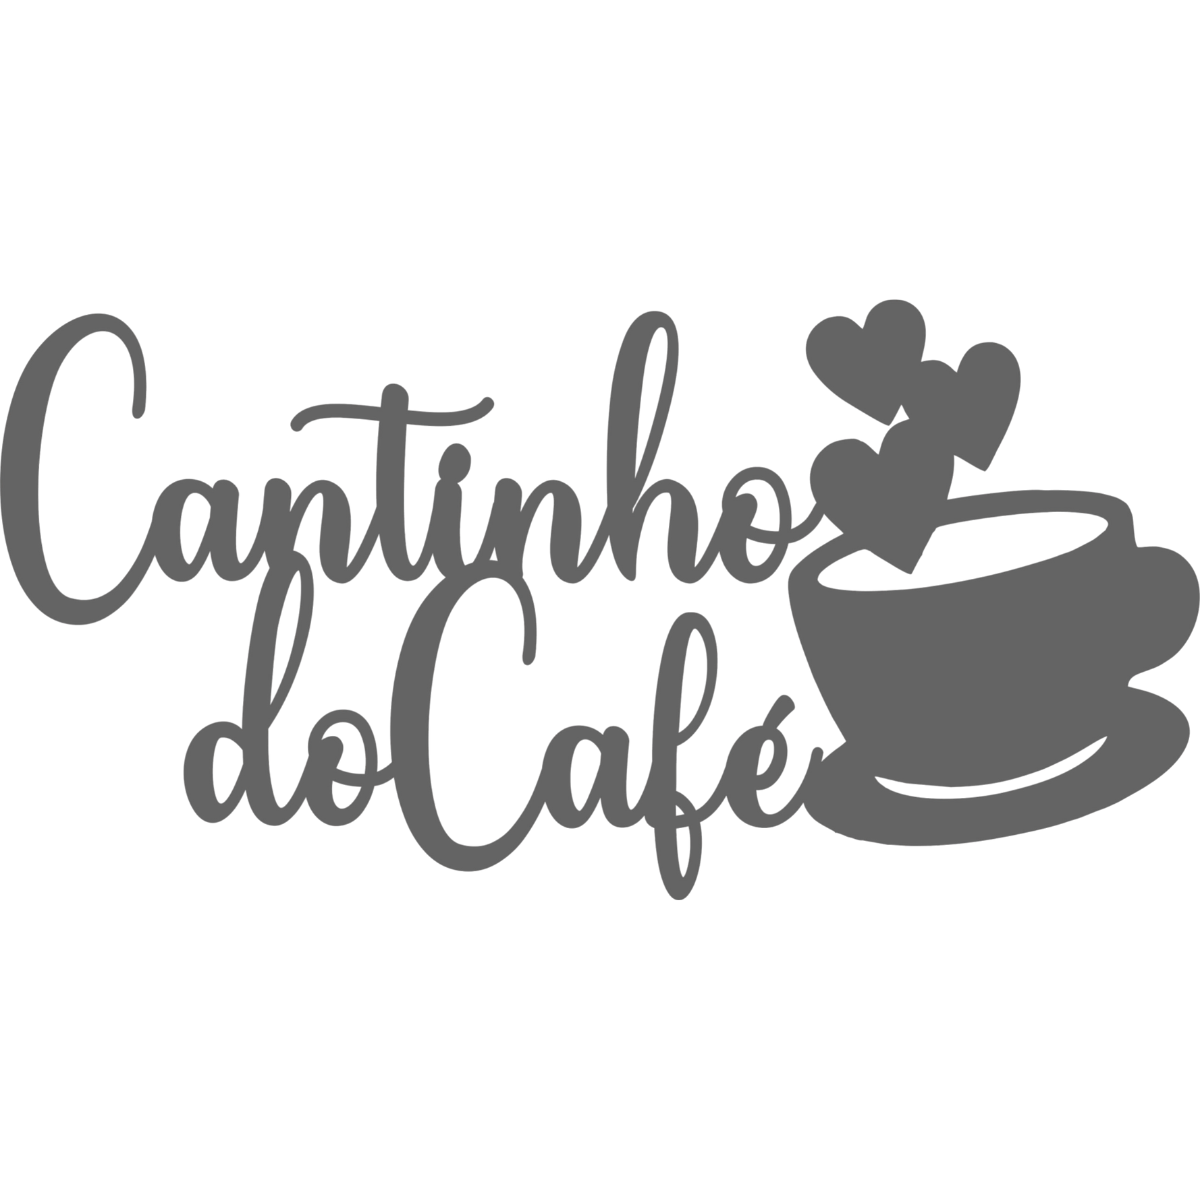 Cantinho do Cafe - Xícara - Decorativo - MDF - Preto - Área Gourmet Varanda Bar - 15x30cm